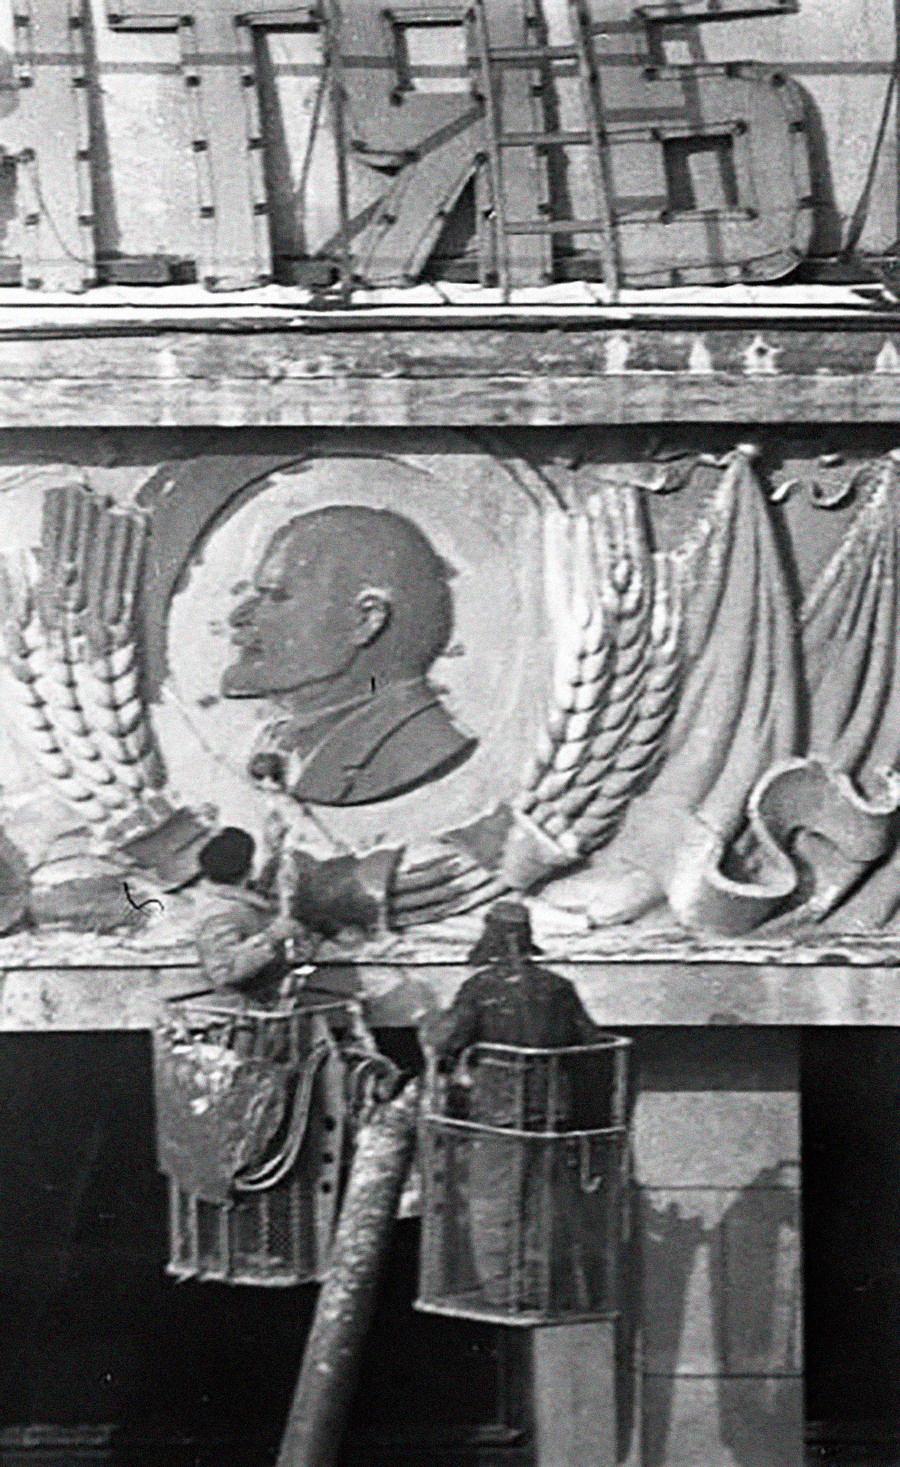 Zwei Arbeiter reinigen das Lenin-Porträt in einem Kolchos.